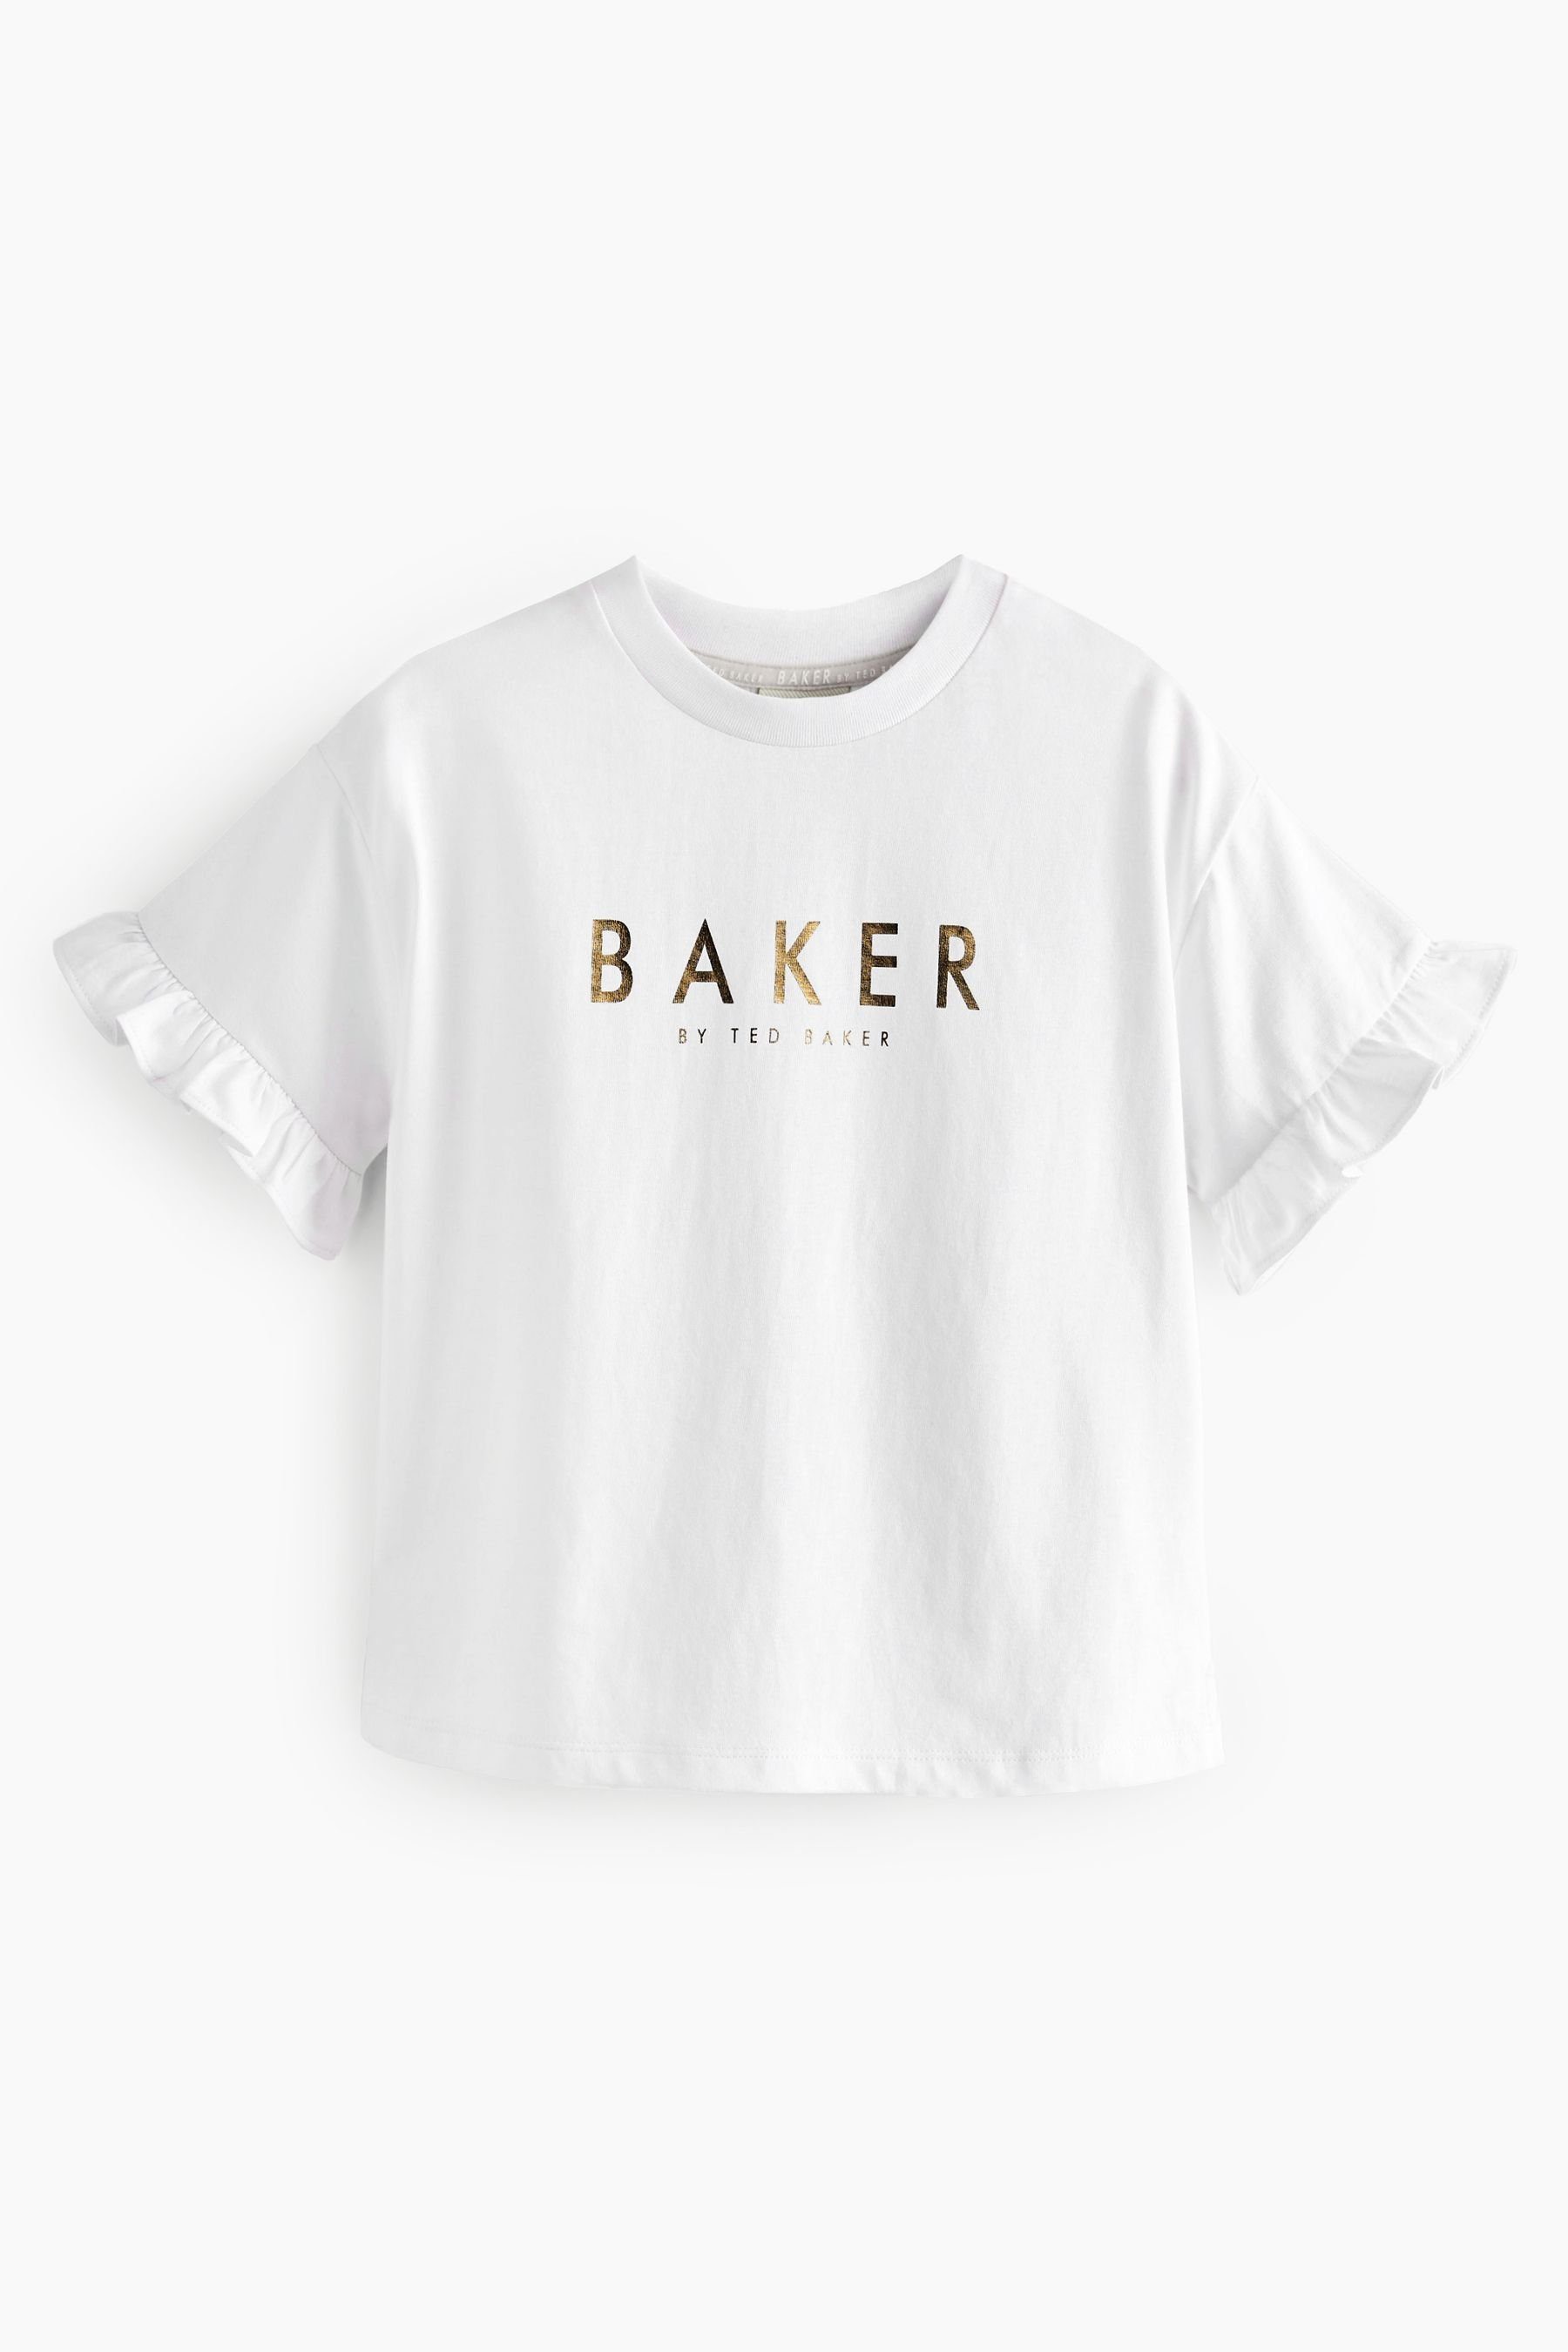 T-Shirts by Ted im Baker Baker T-Shirt Baker by 3er-Pack Baker (3-tlg) Ted